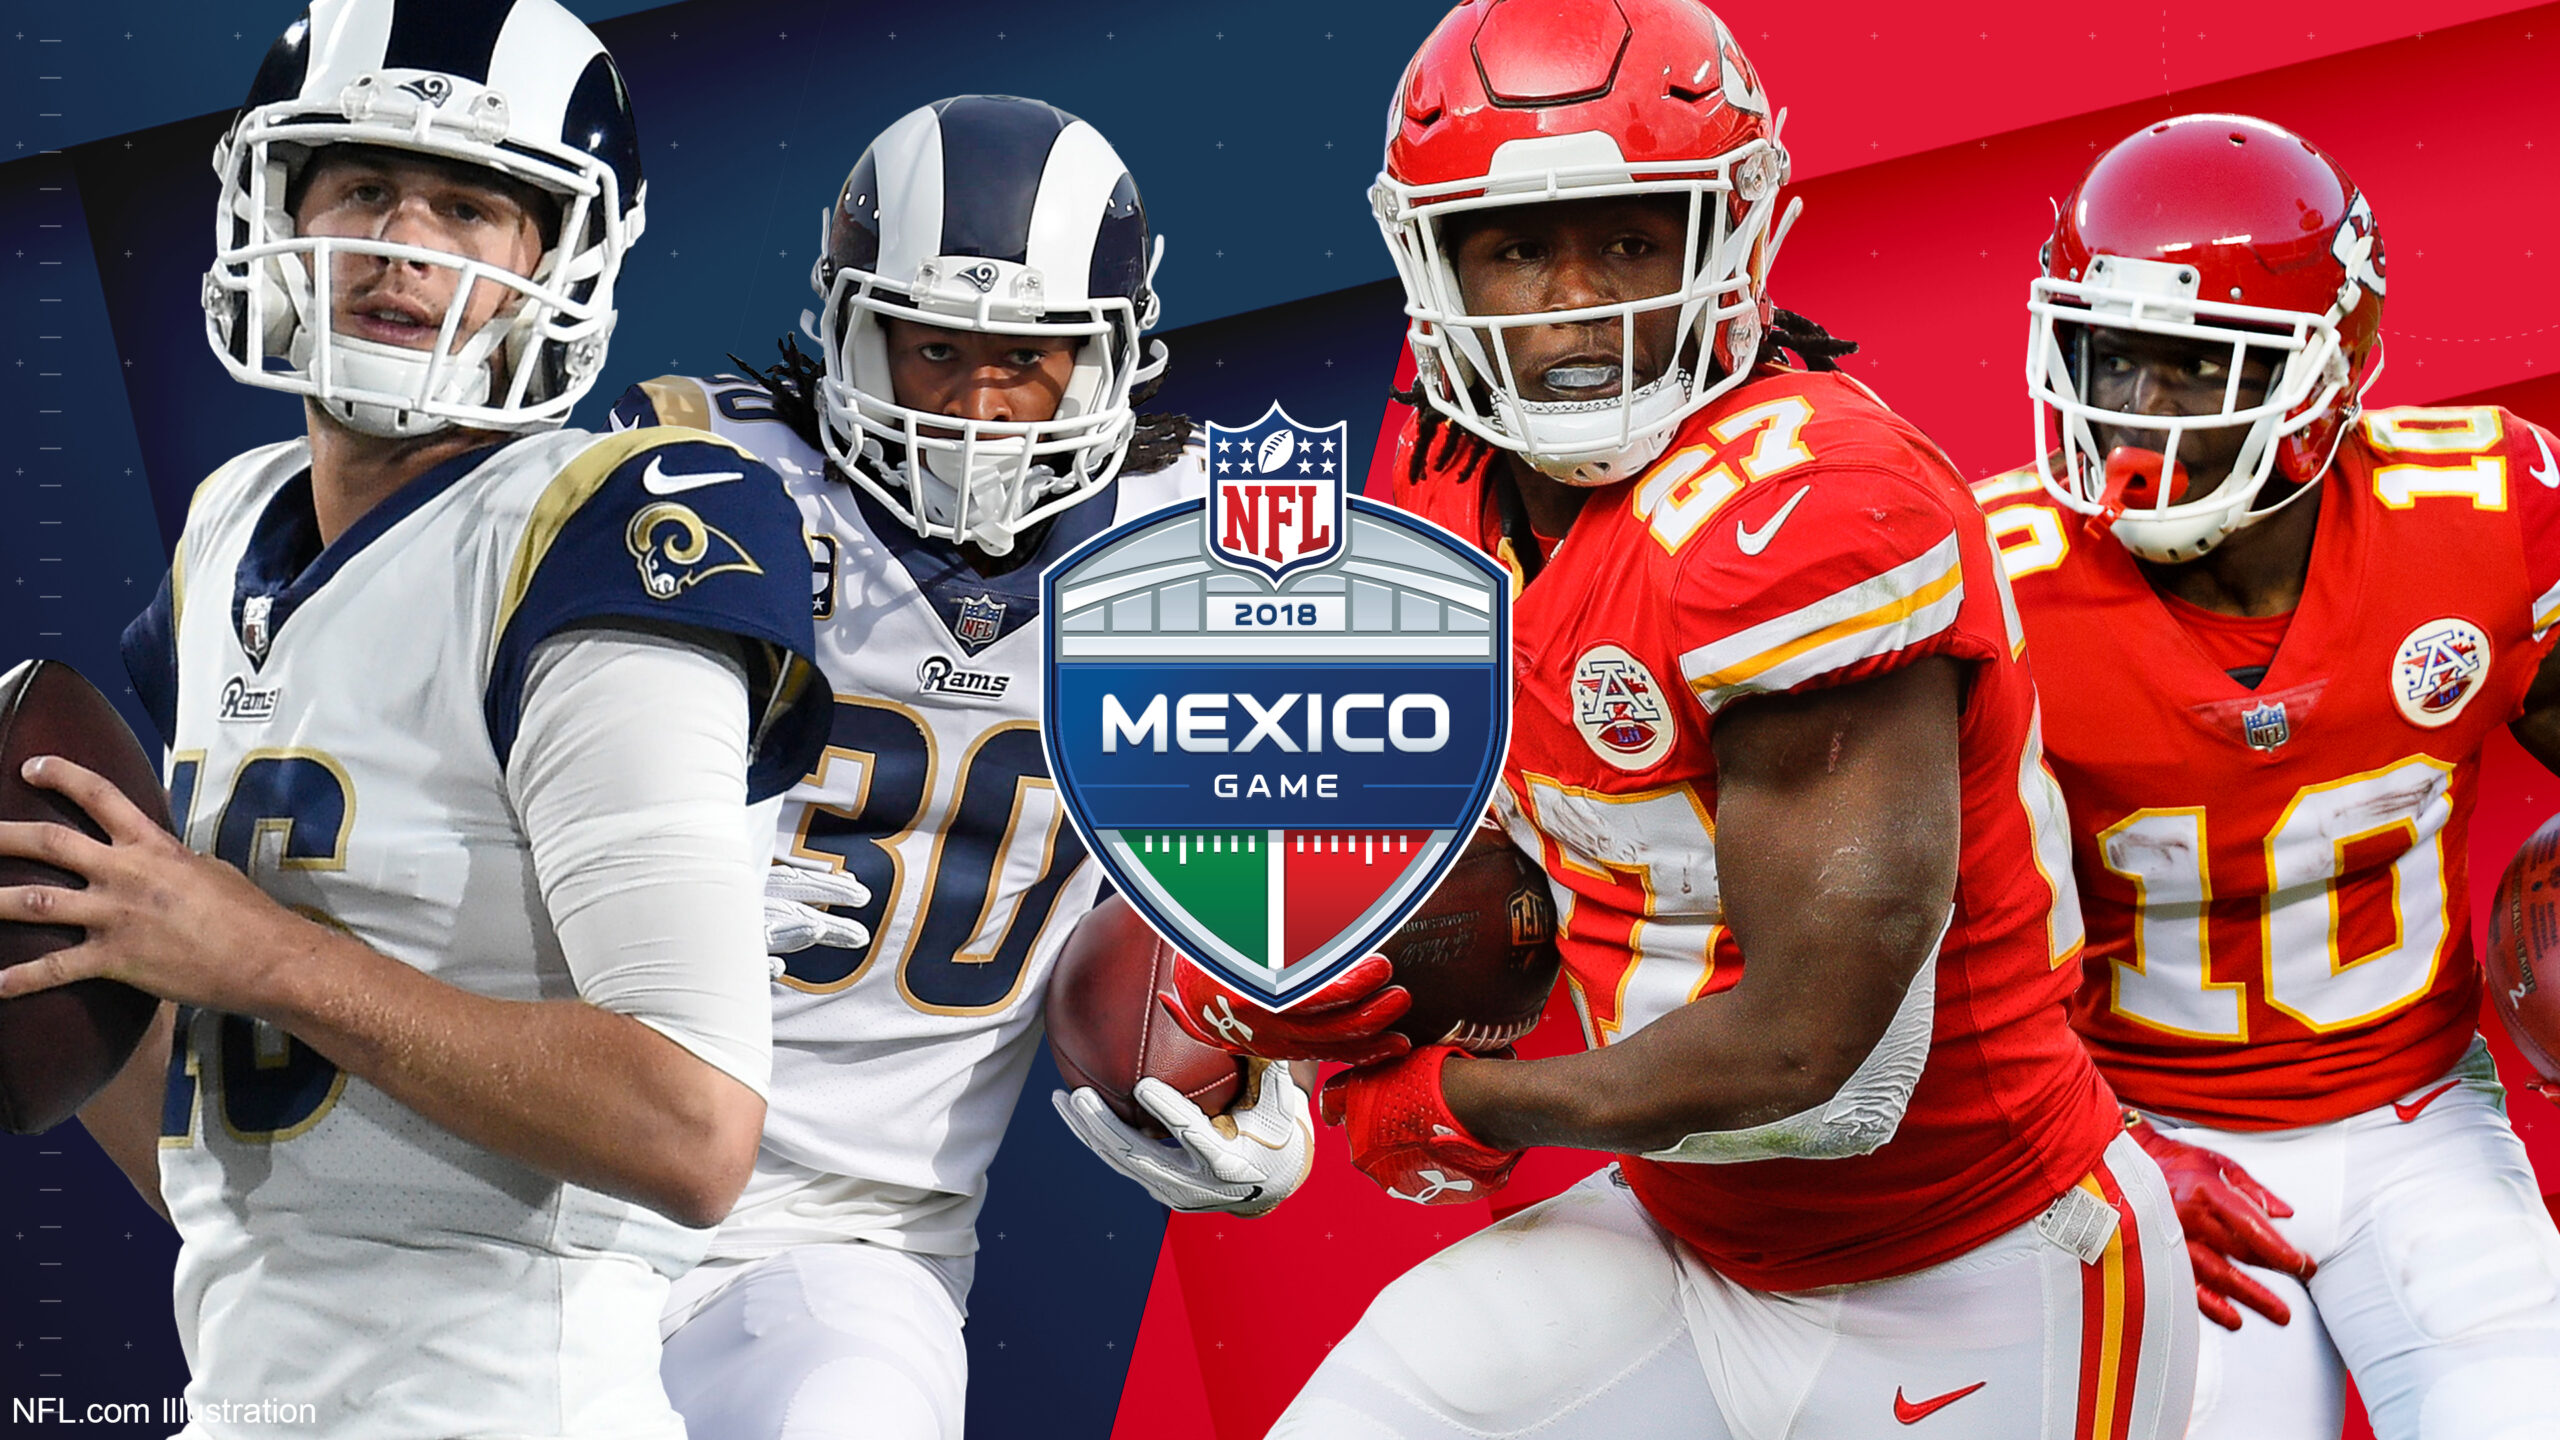 Cancelan juego de la NFL en el Azteca; se mueve a Los Ángeles